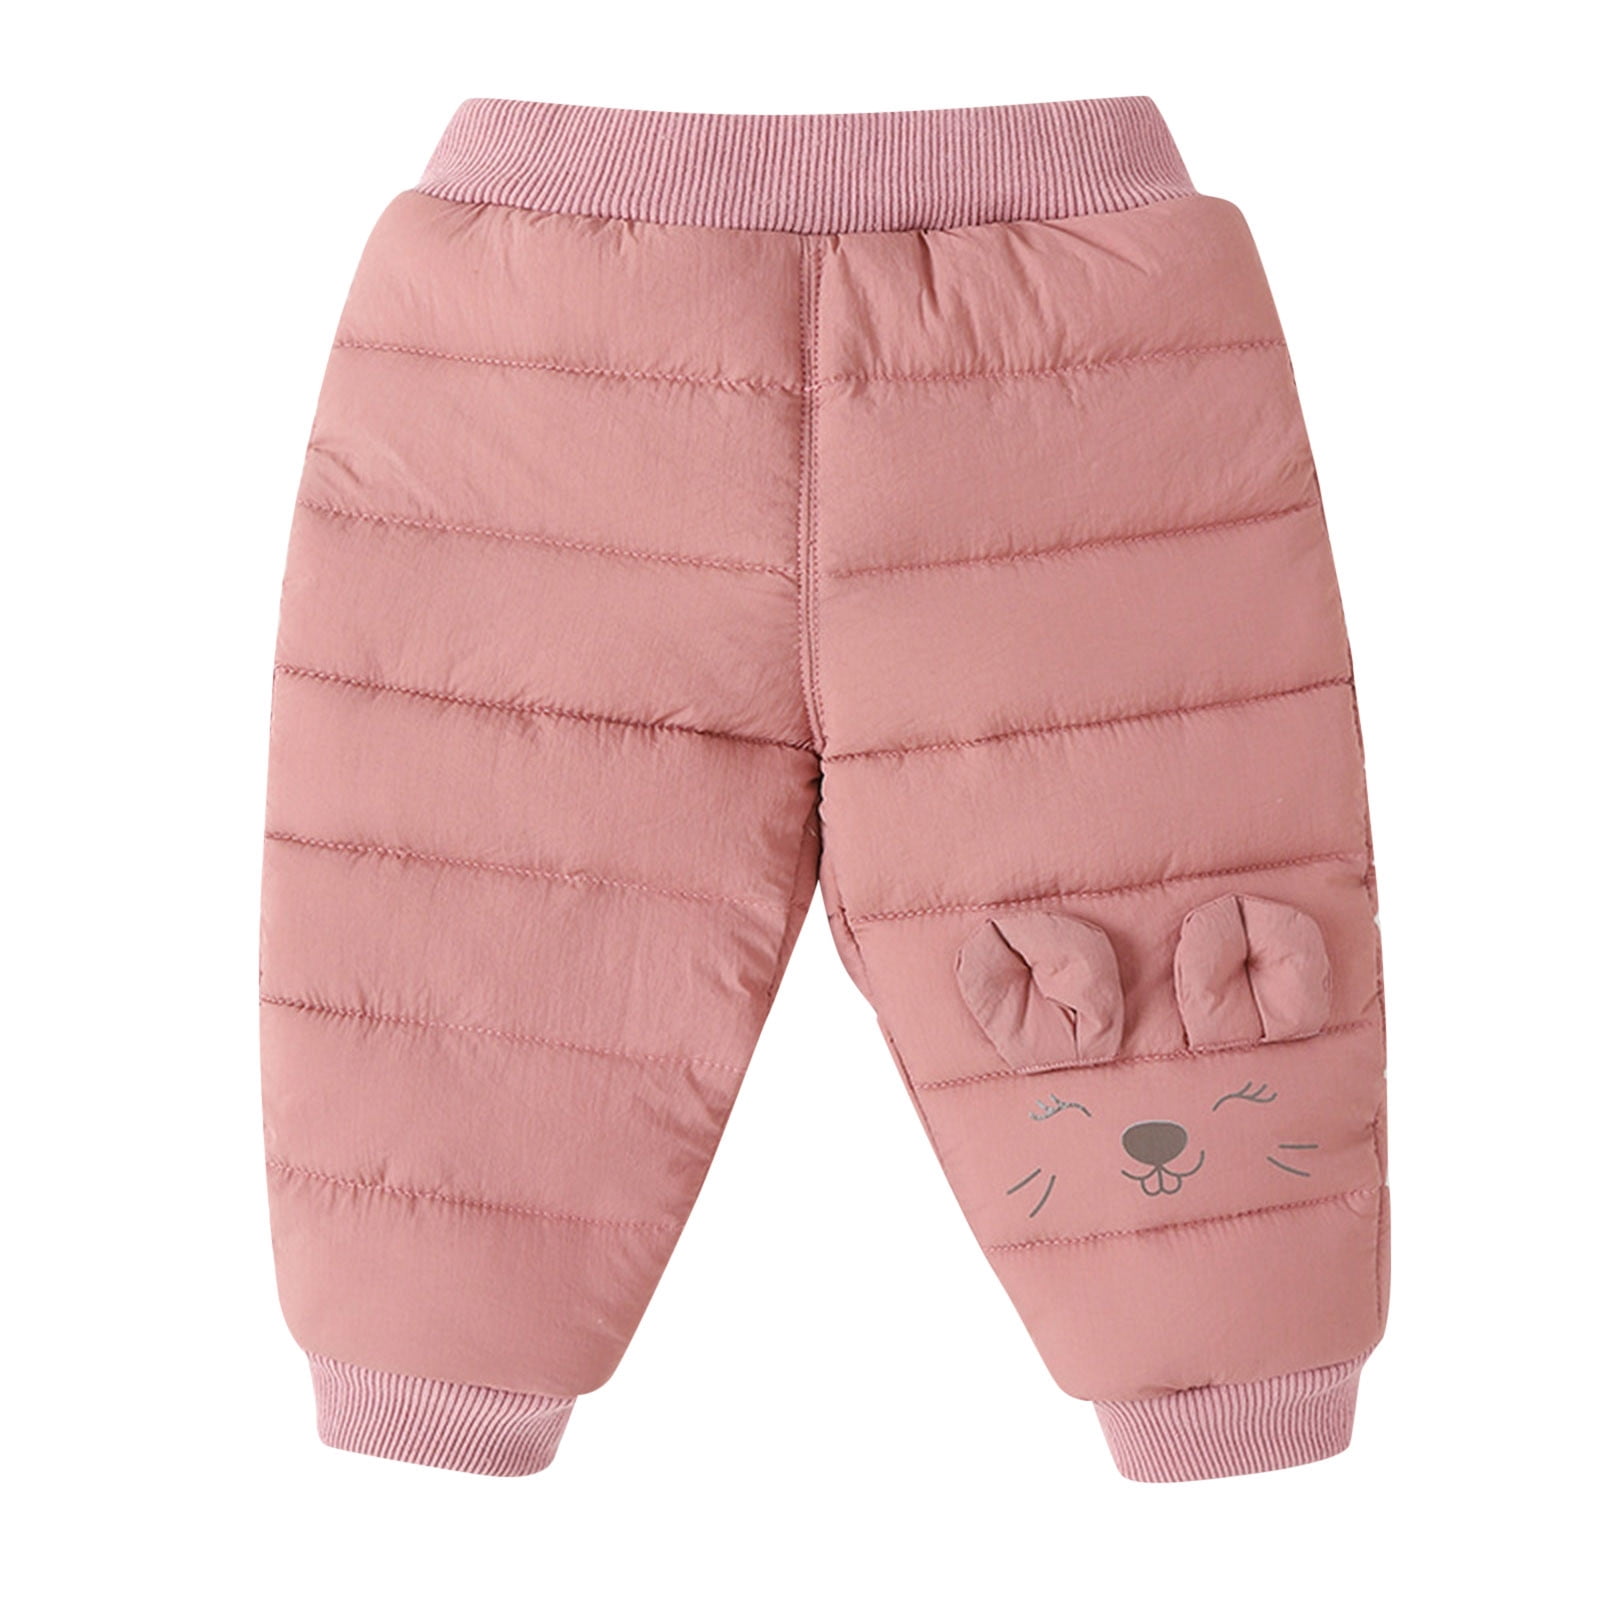 boys pants winter warm velvet winter leggings for elastic waist fashion  pants | eBay